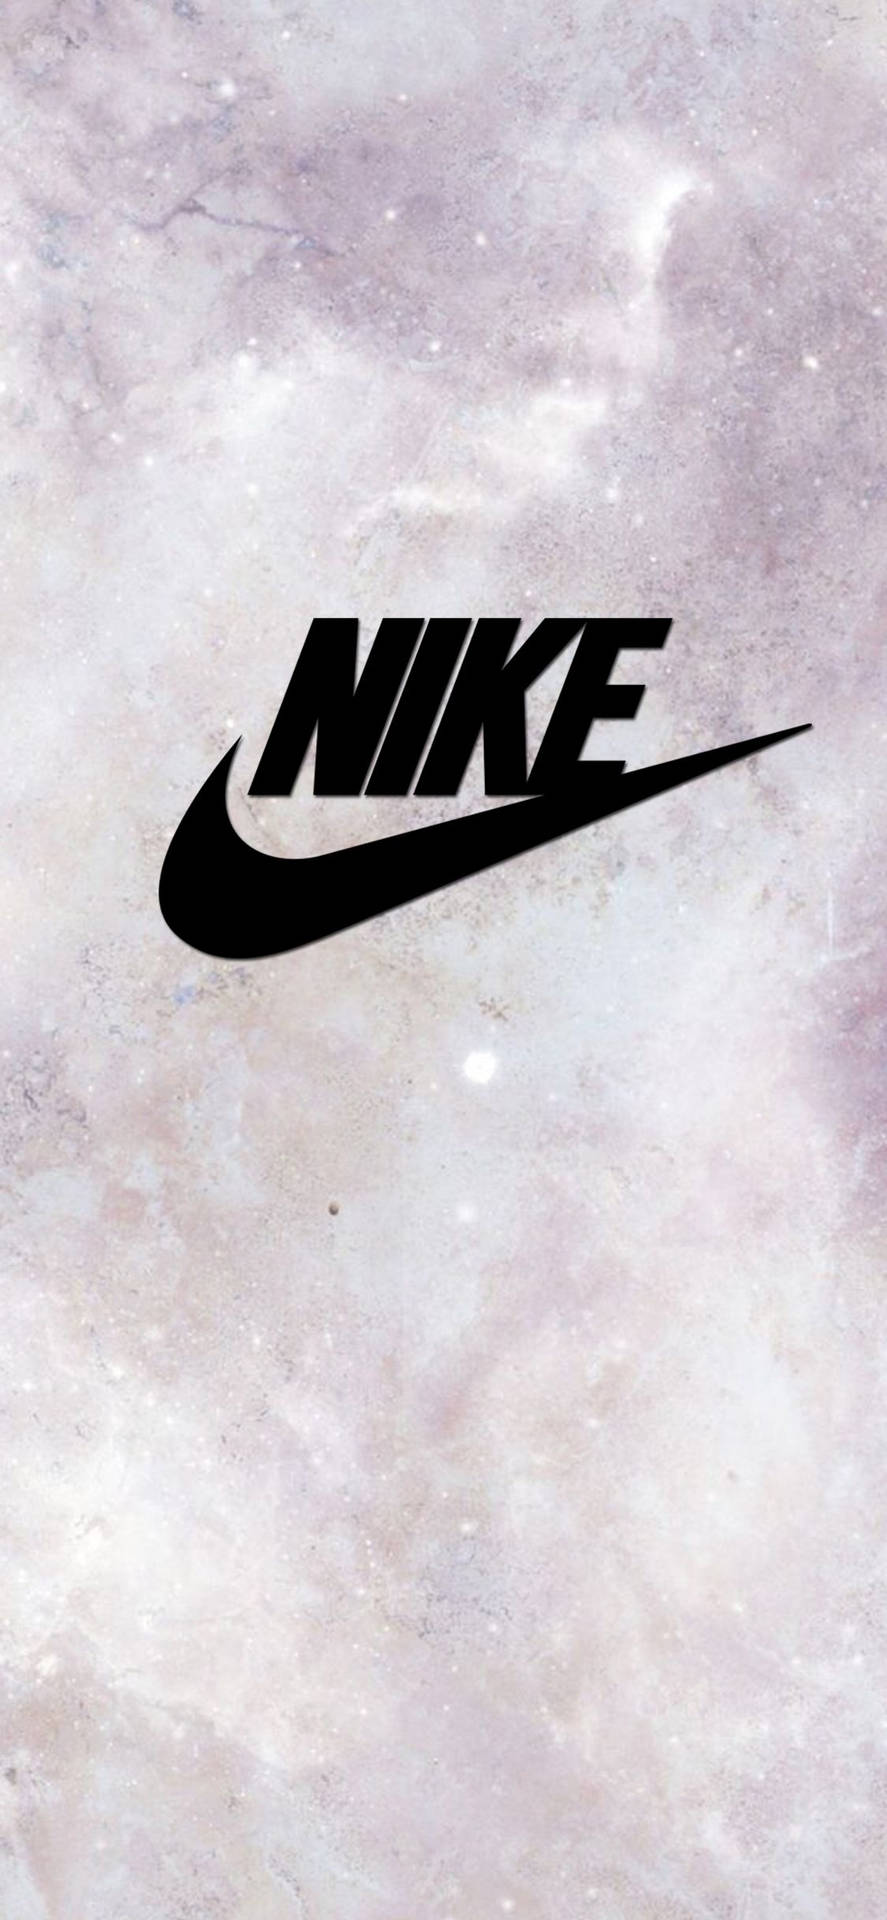 Nike Girl Logo On Moon Surface Background